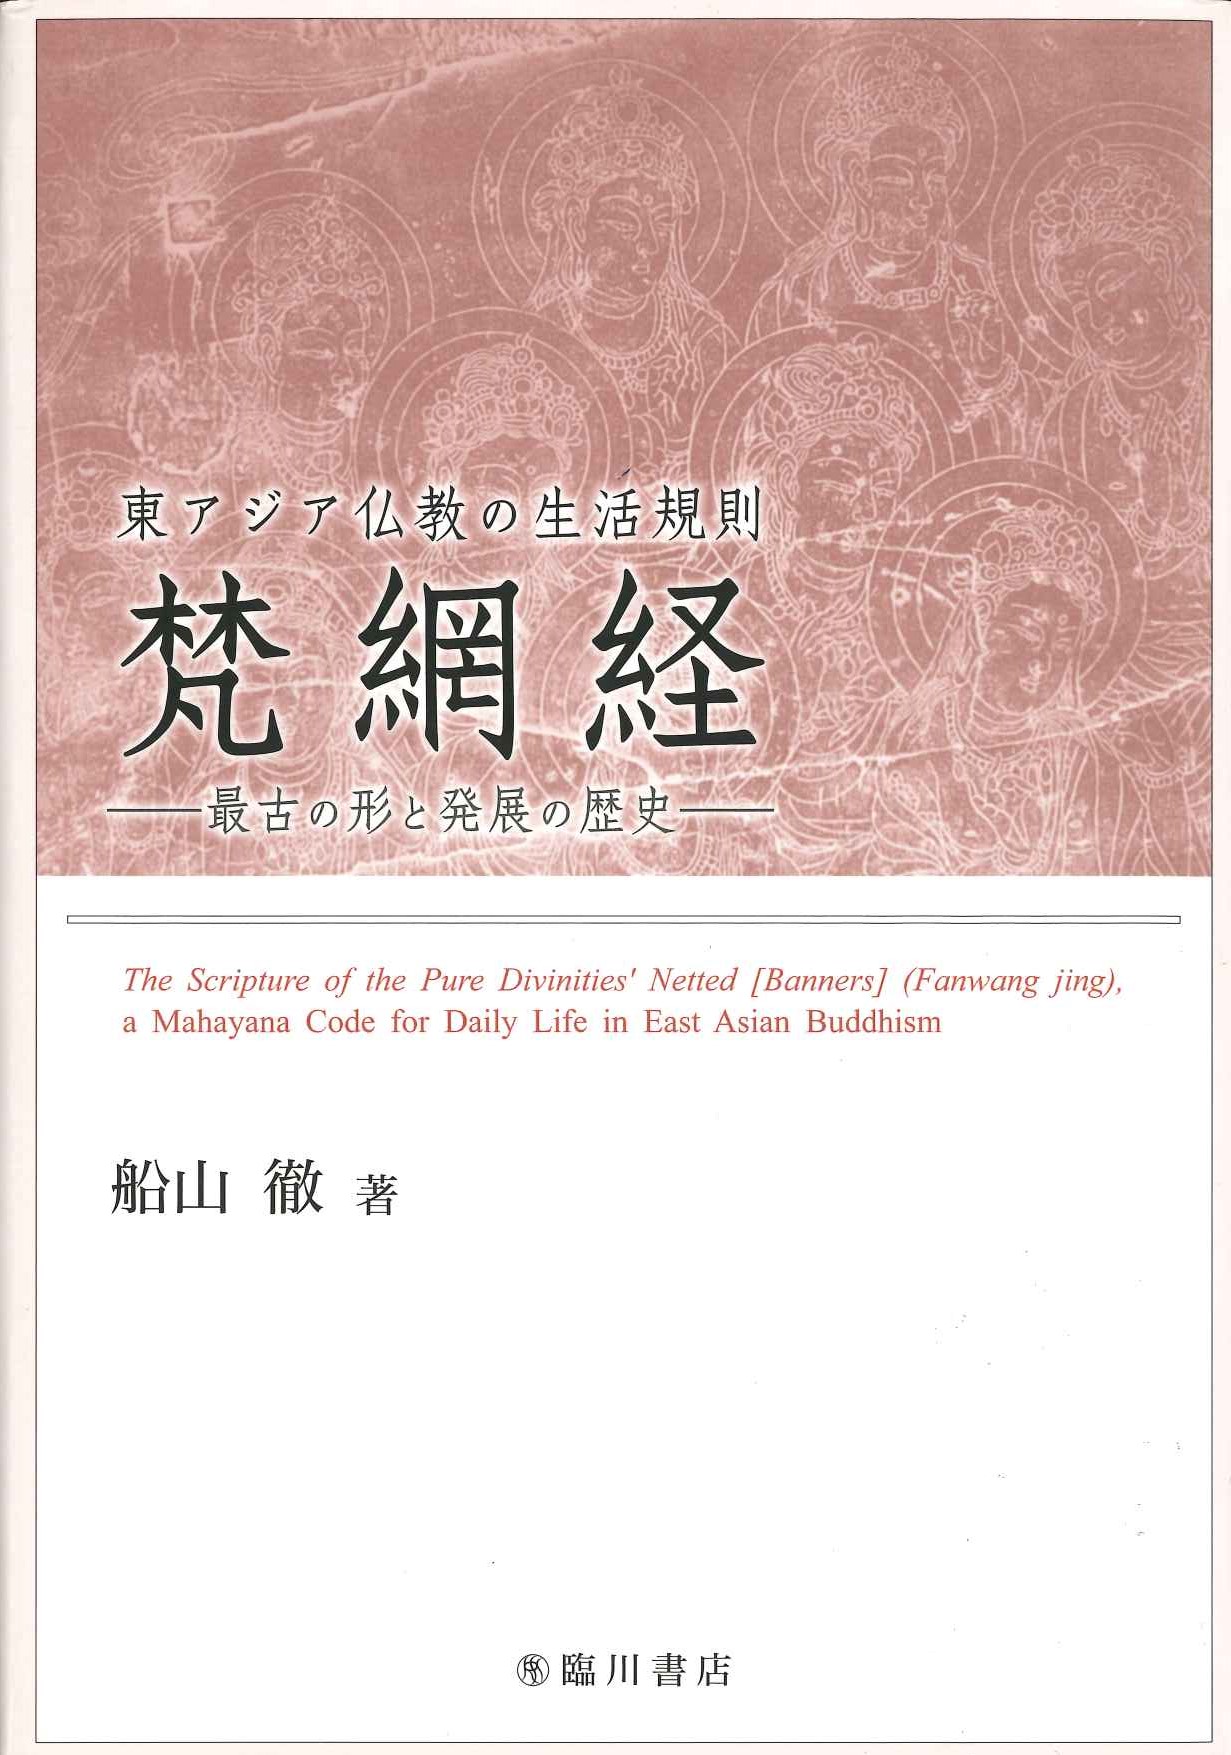 東アジア仏教の生活規則 梵網経 最古の形と発展の歴史 初版